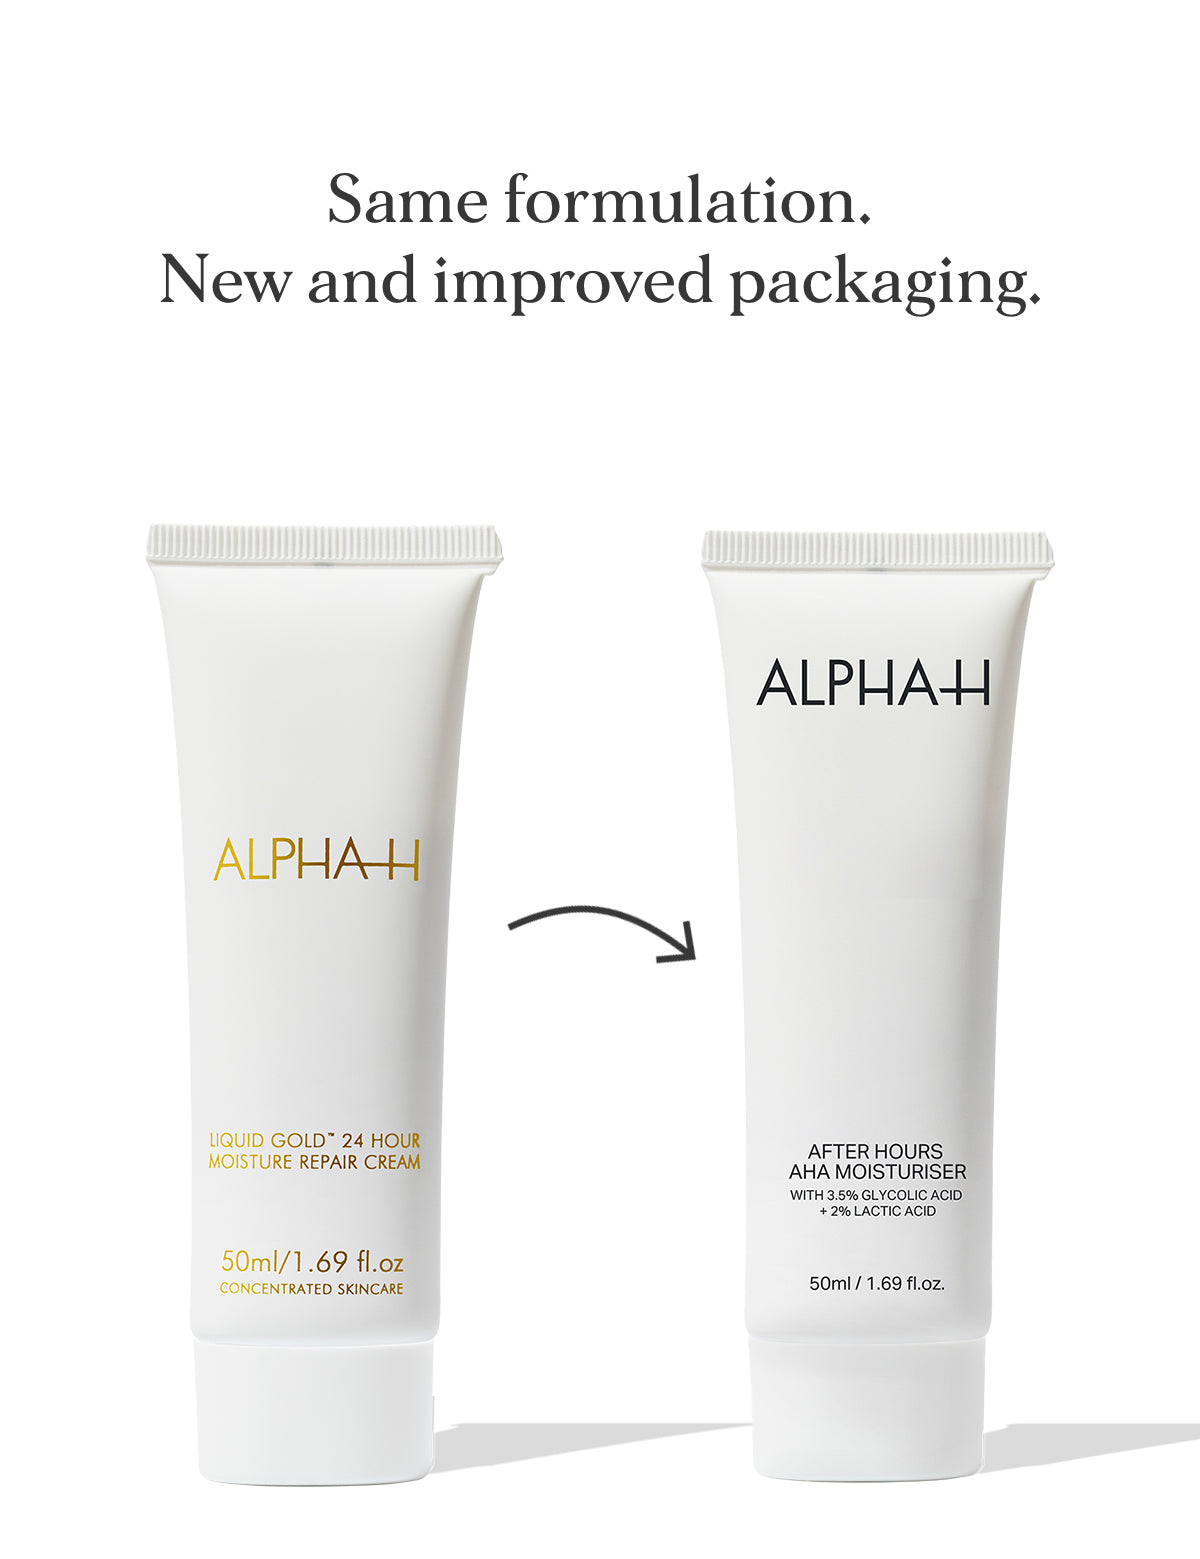 AHAHAM-PackagingInfographic.jpg